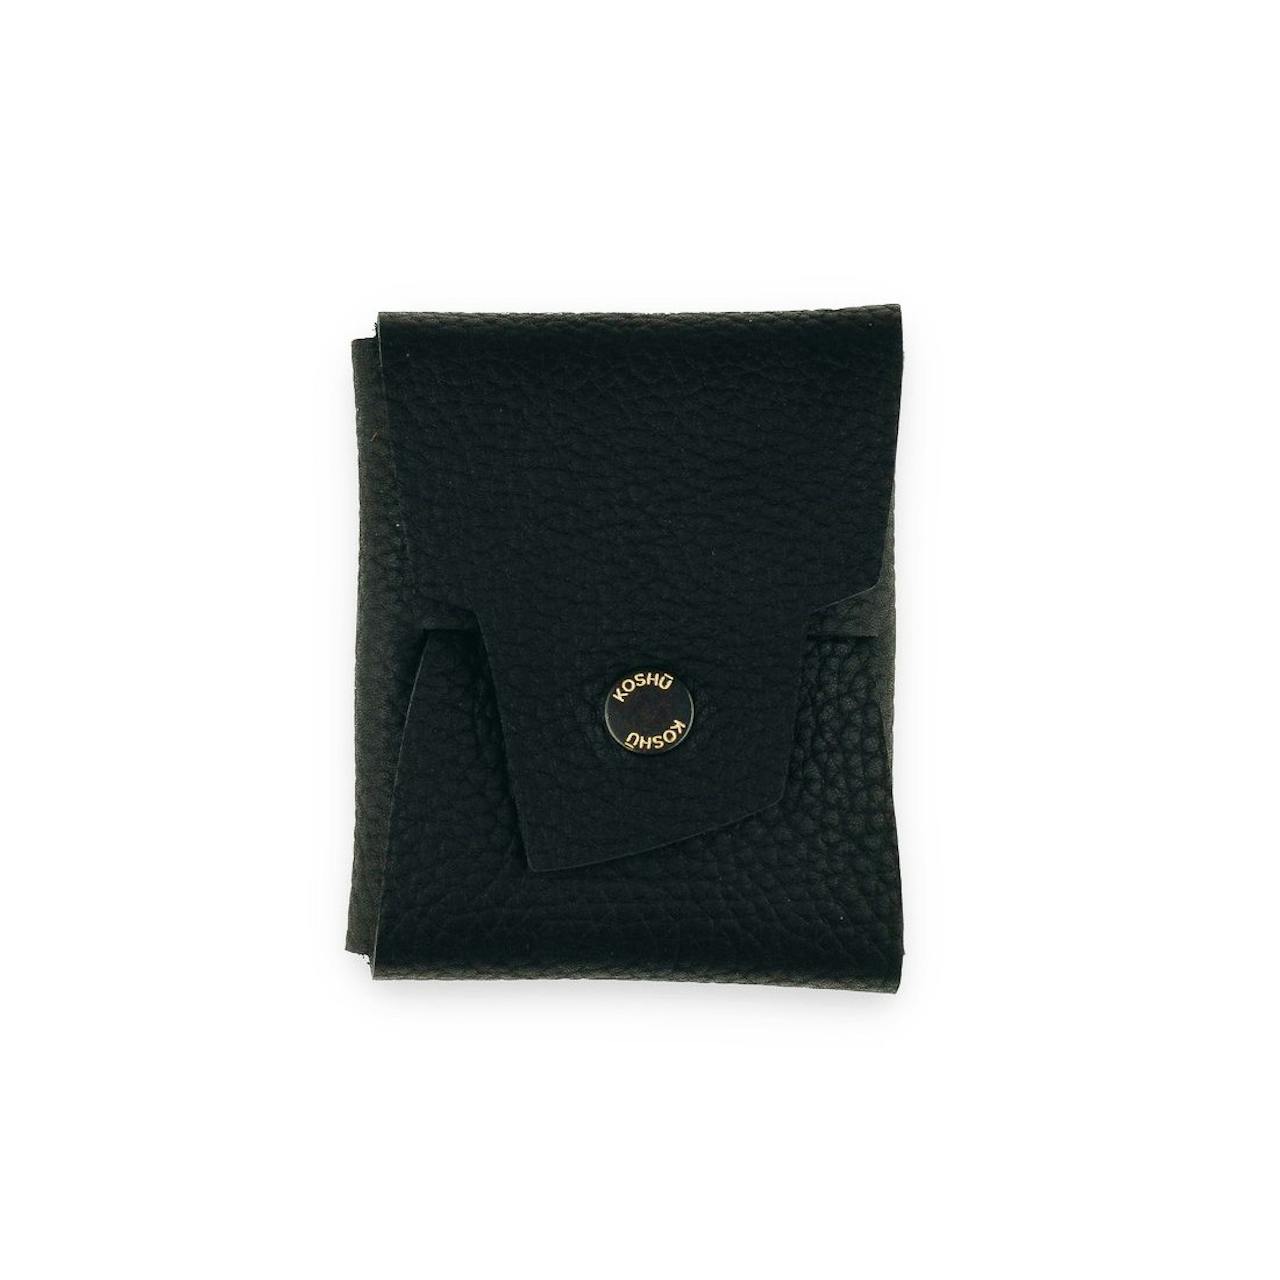 Koshu Origami Leather Wallet